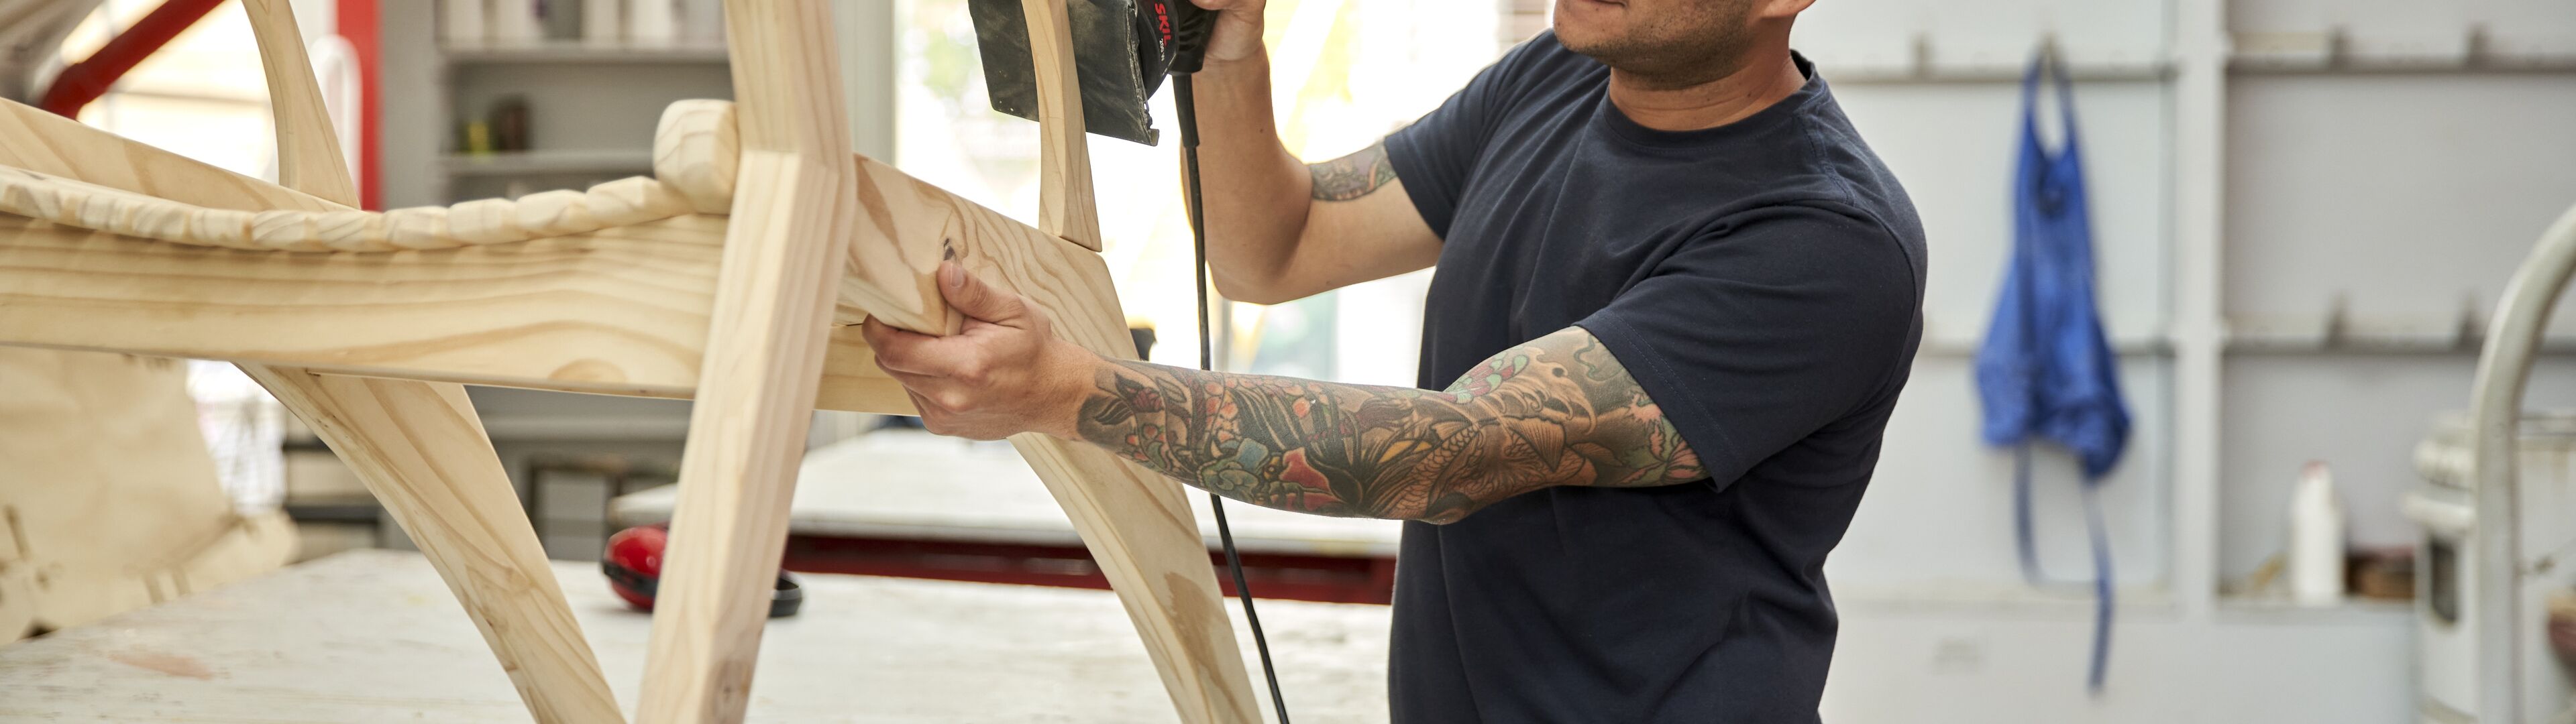 Un artesano tatuado con gafas de seguridad lija una silla en un taller bien iluminado.